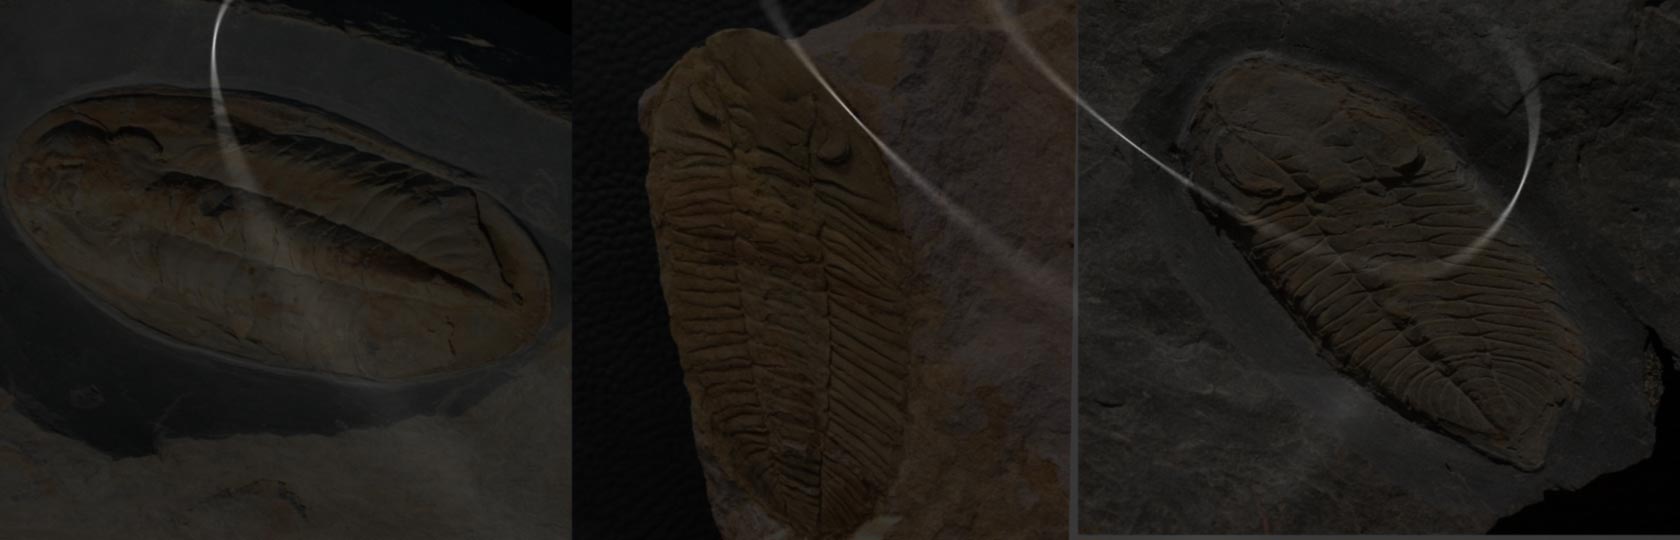 Trilobites Portugal